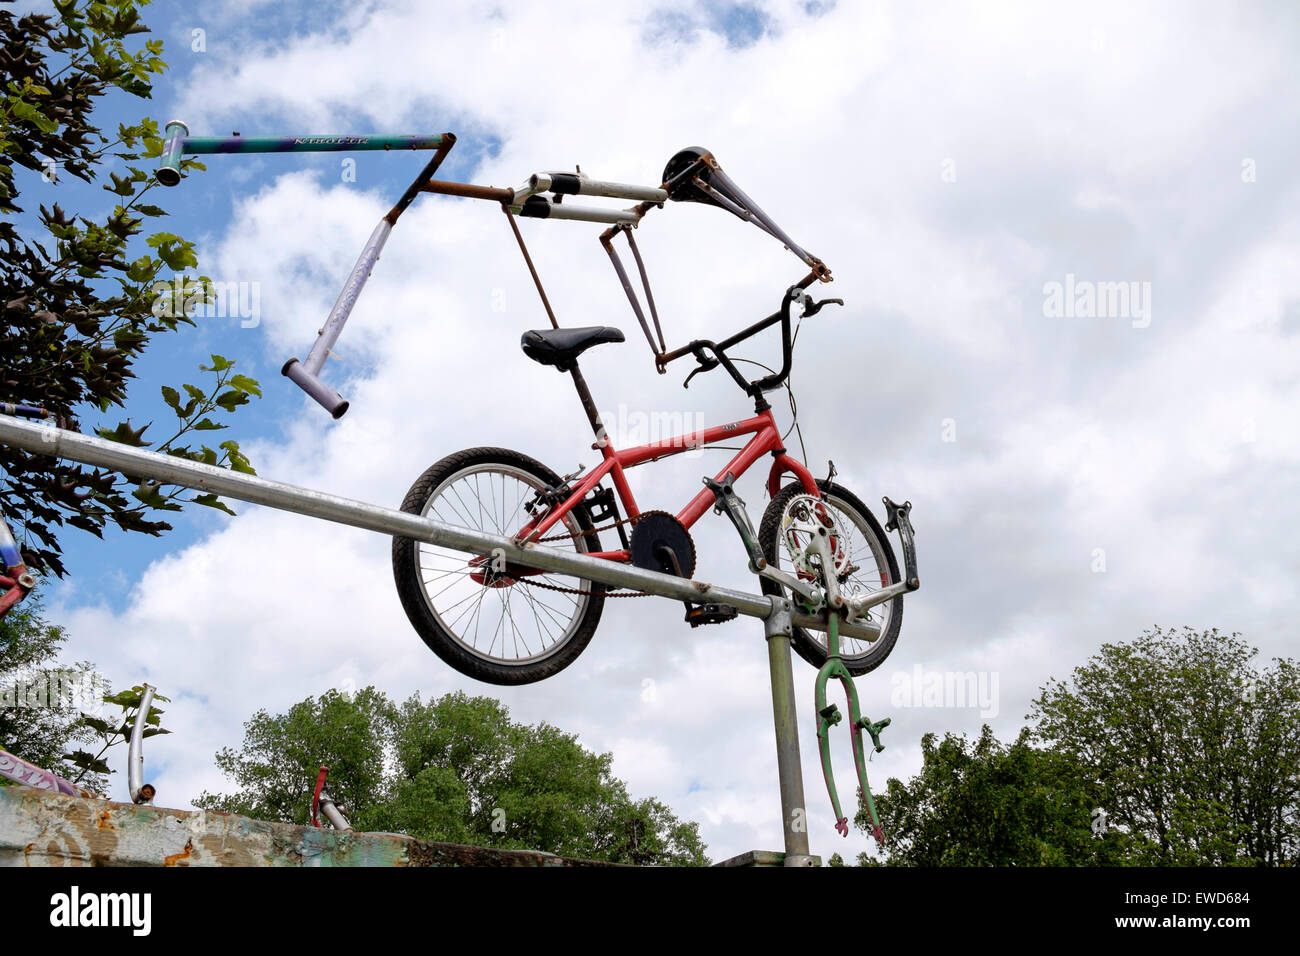 BMX bicycle art sculpture Stock Photo